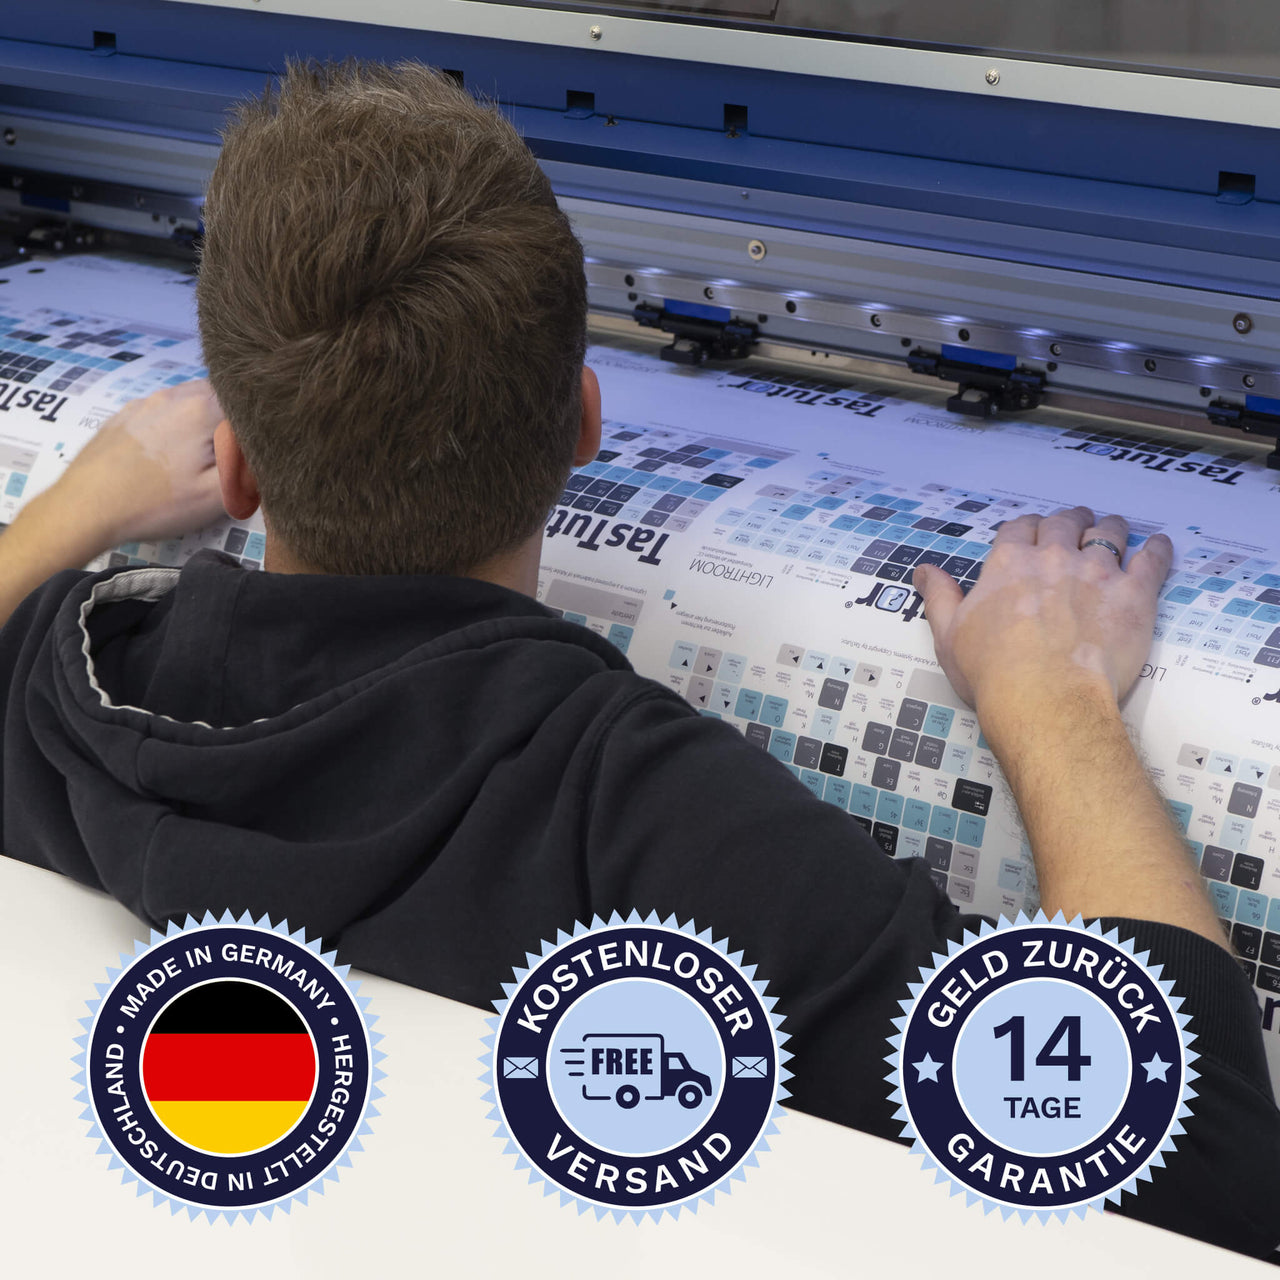 Logic Tastaturaufkleber werden in Deutschland hergestellt. Der Versand ist kostenlos und wir gewährleisten 14 Tage Geld zurück Garantie | TasTutor